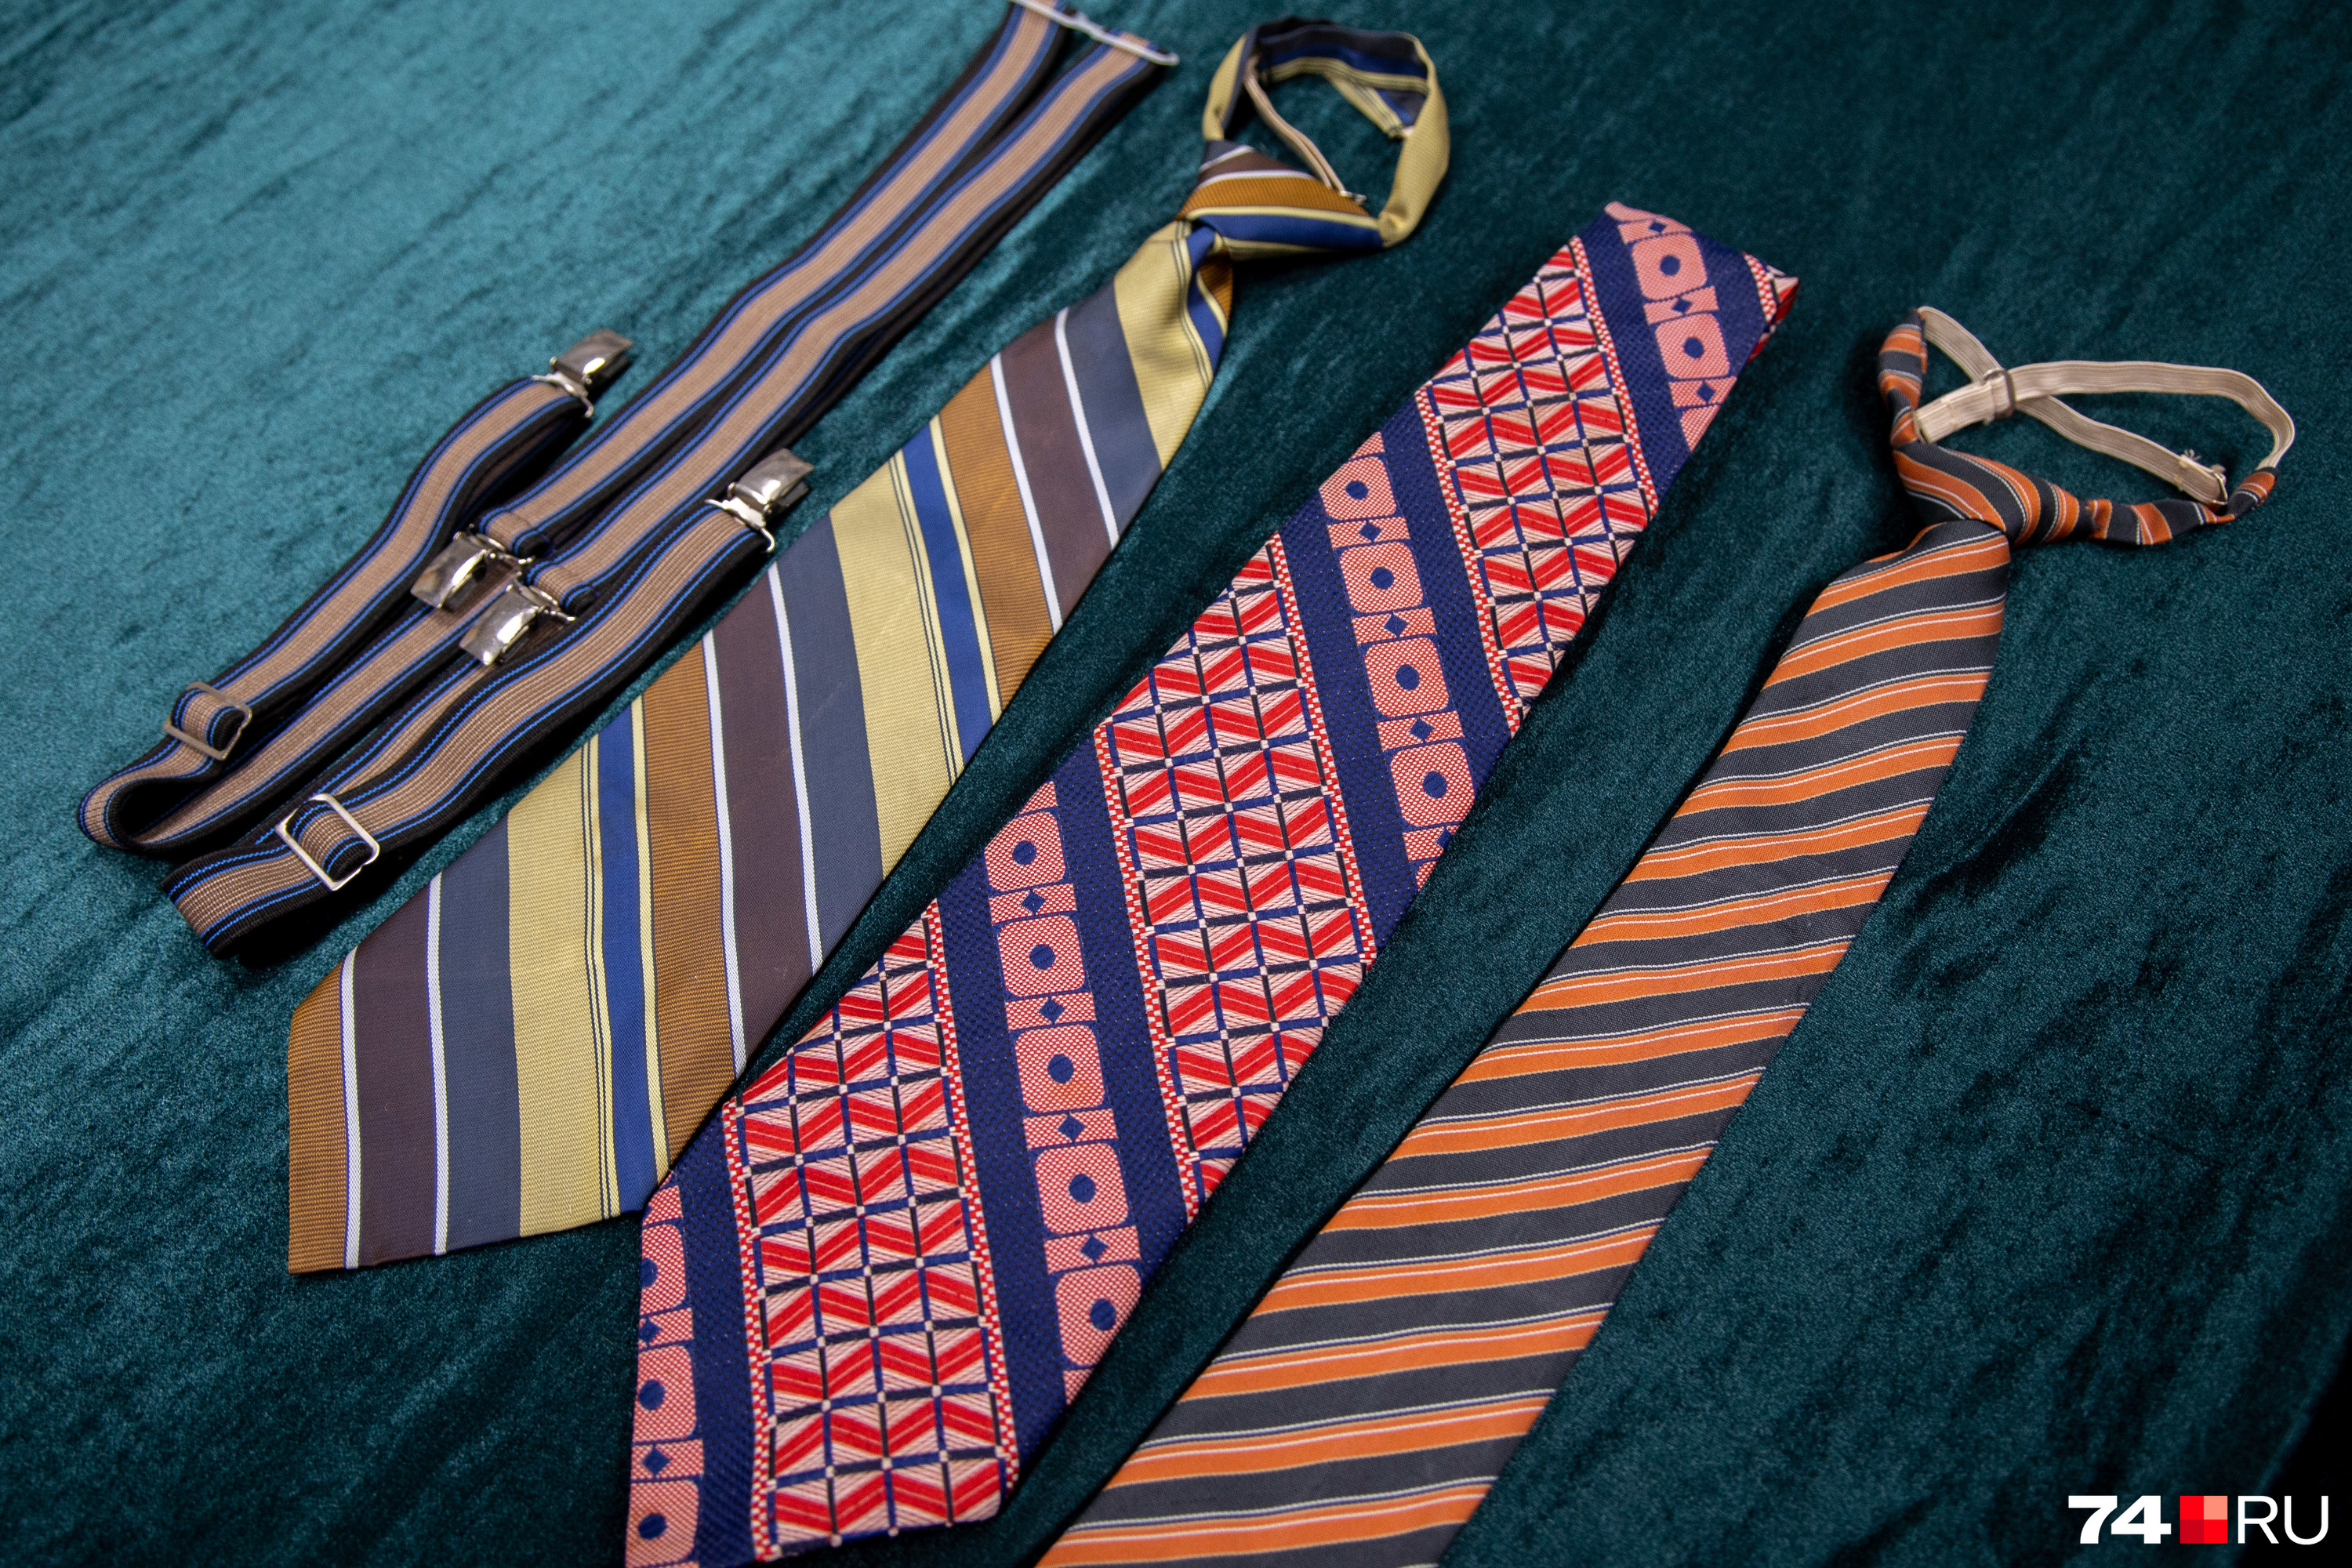 А это коллекция галстуков еще одного заводчанина — участника Великой Отечественной войны, механика завода имени Орджоникидзе Павла Кузьмича Антонова